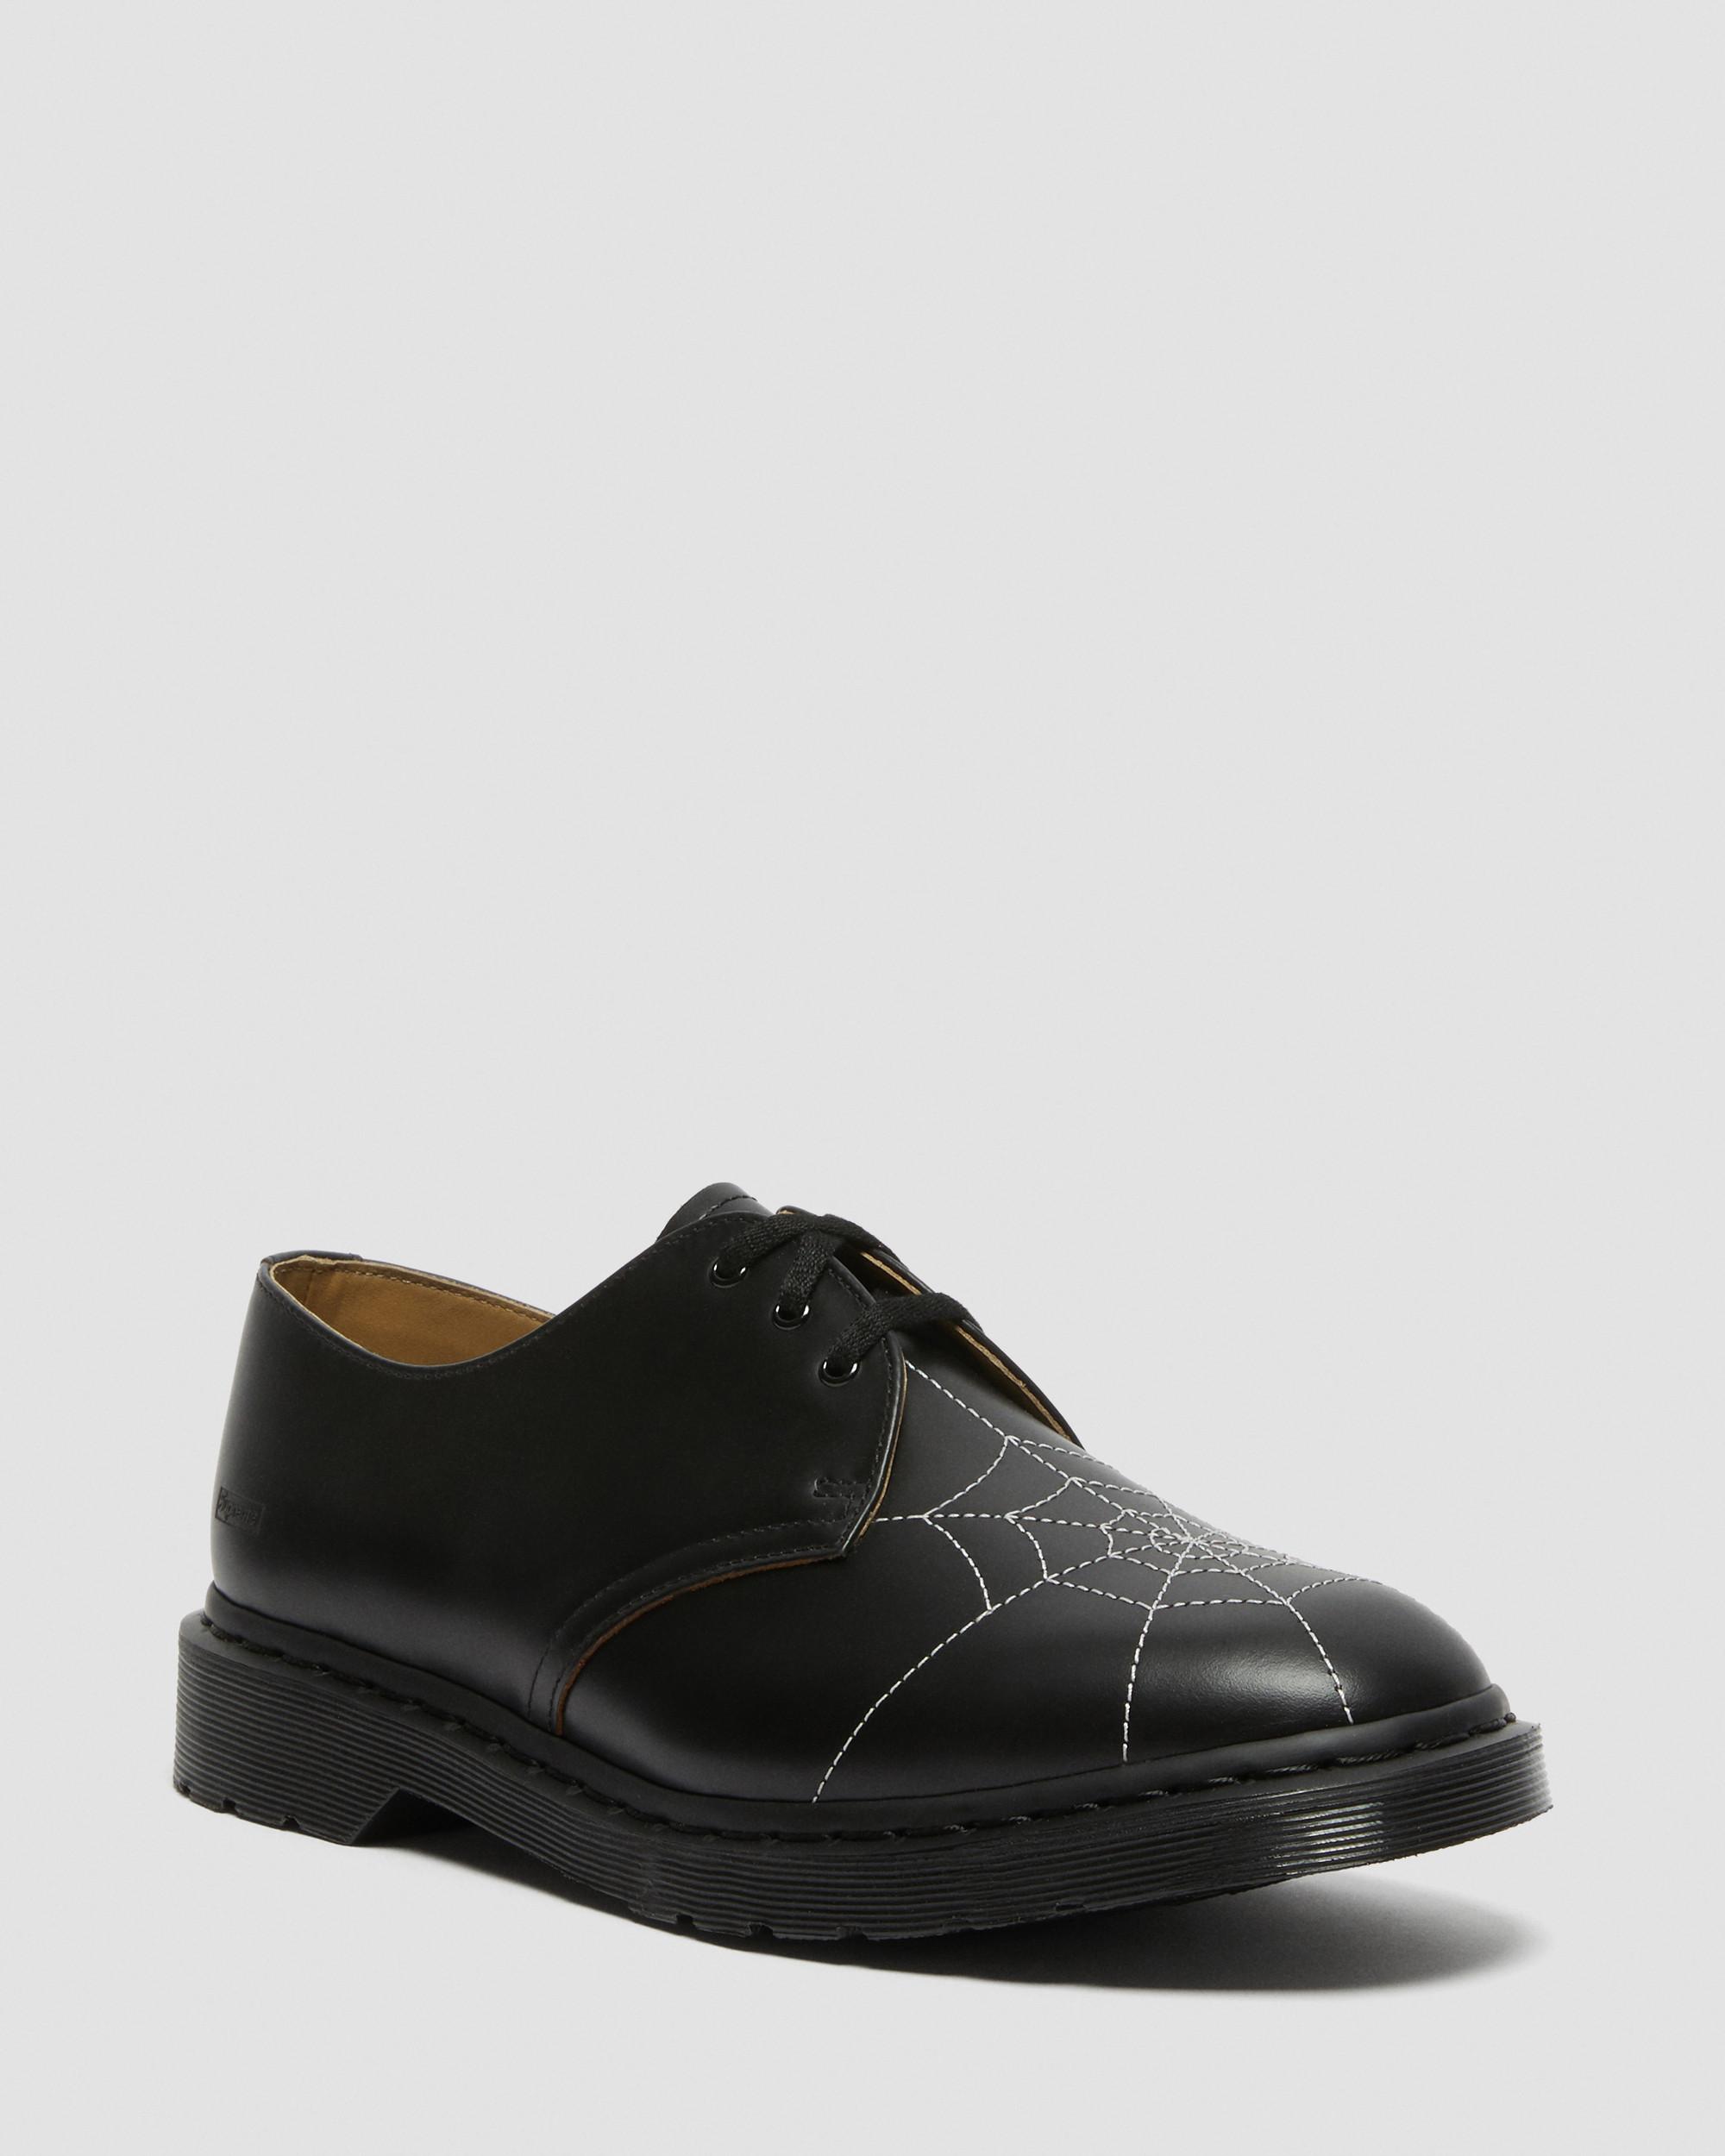 DR MARTENS 1461 Supreme Web Vintage Smooth Leather Shoes